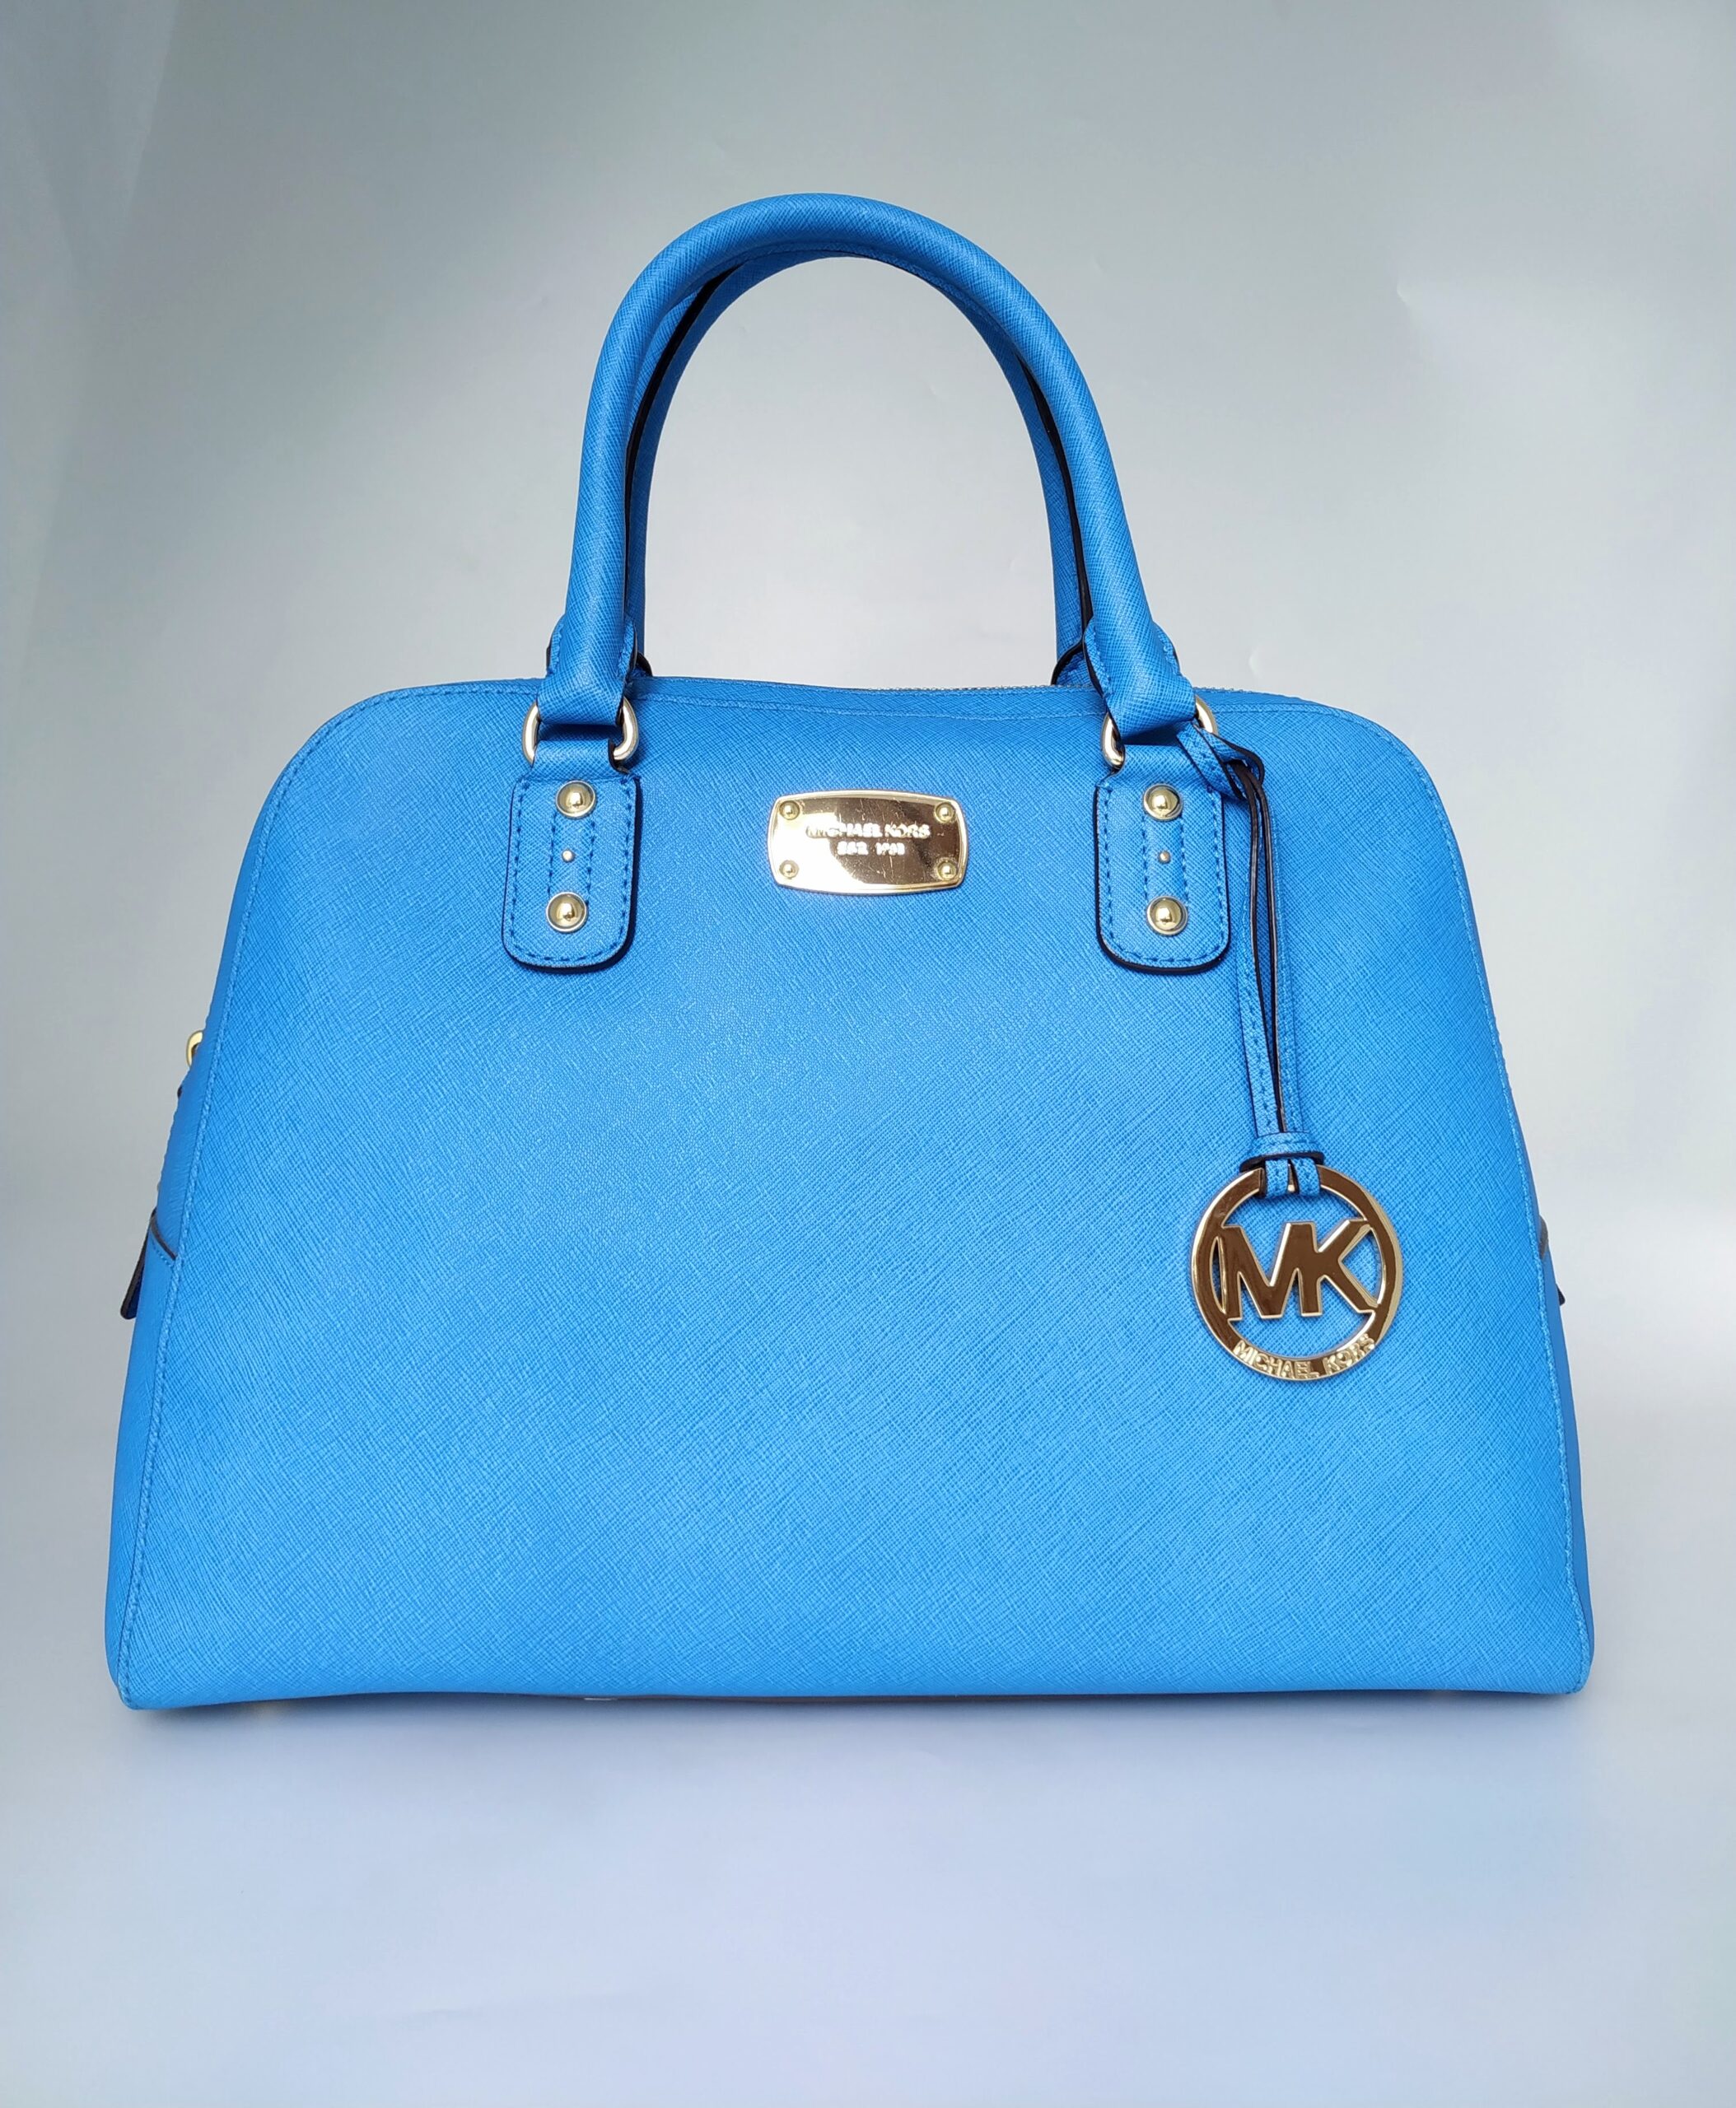 MK blue handbag